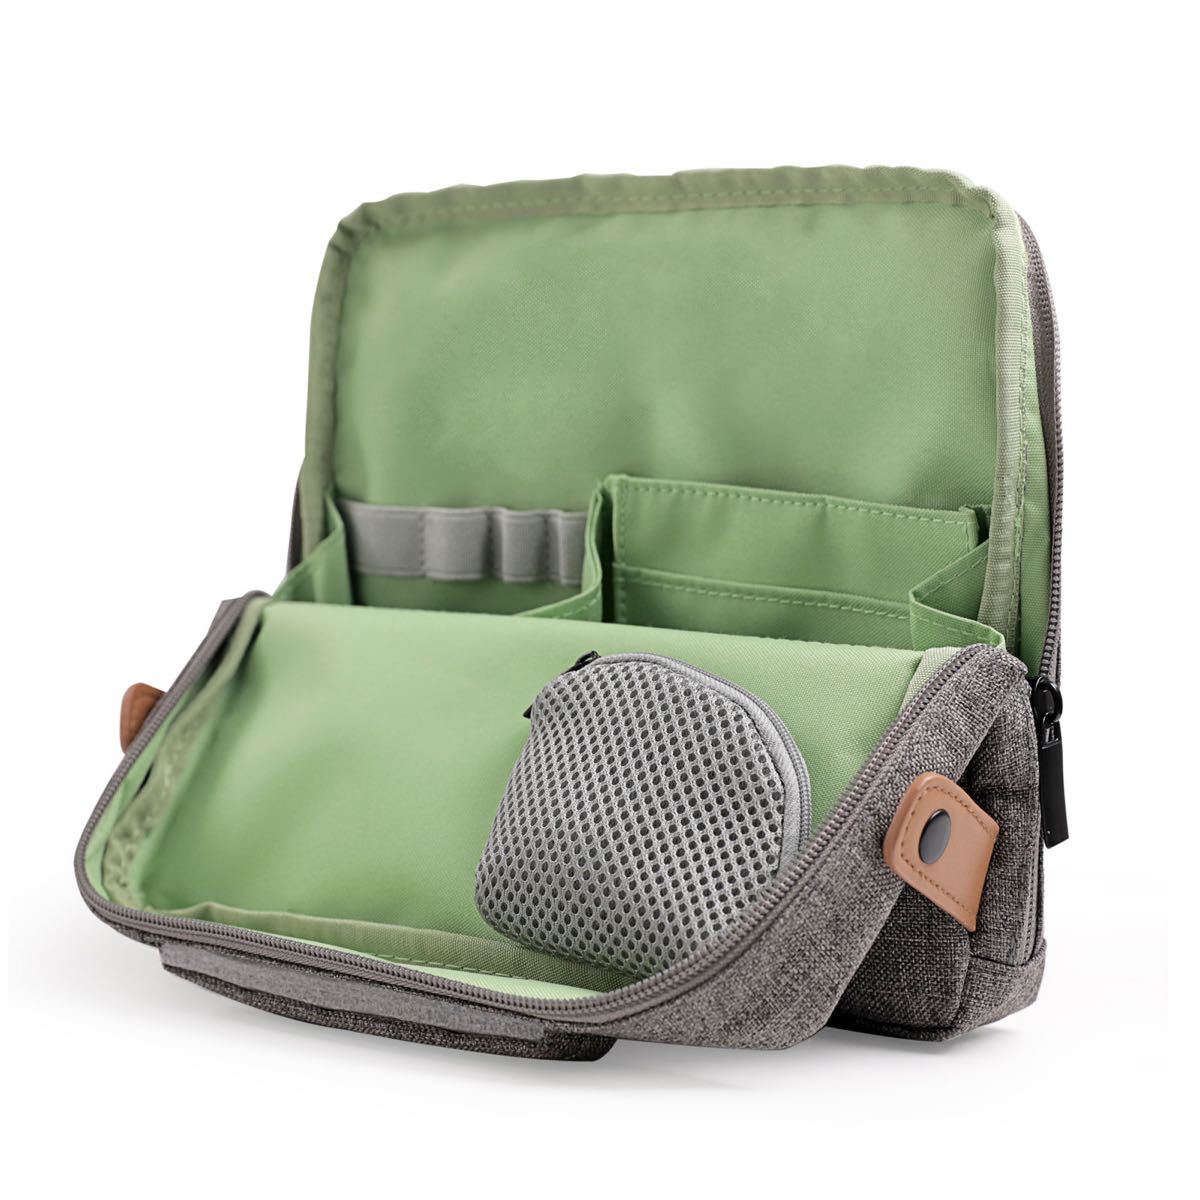 新品 収納バッグ ボックス インバッグ インナーバッグ 化粧品バッグ 整理整頓 大容量 多機能 マルチバッグ 軽量 旅行 通勤